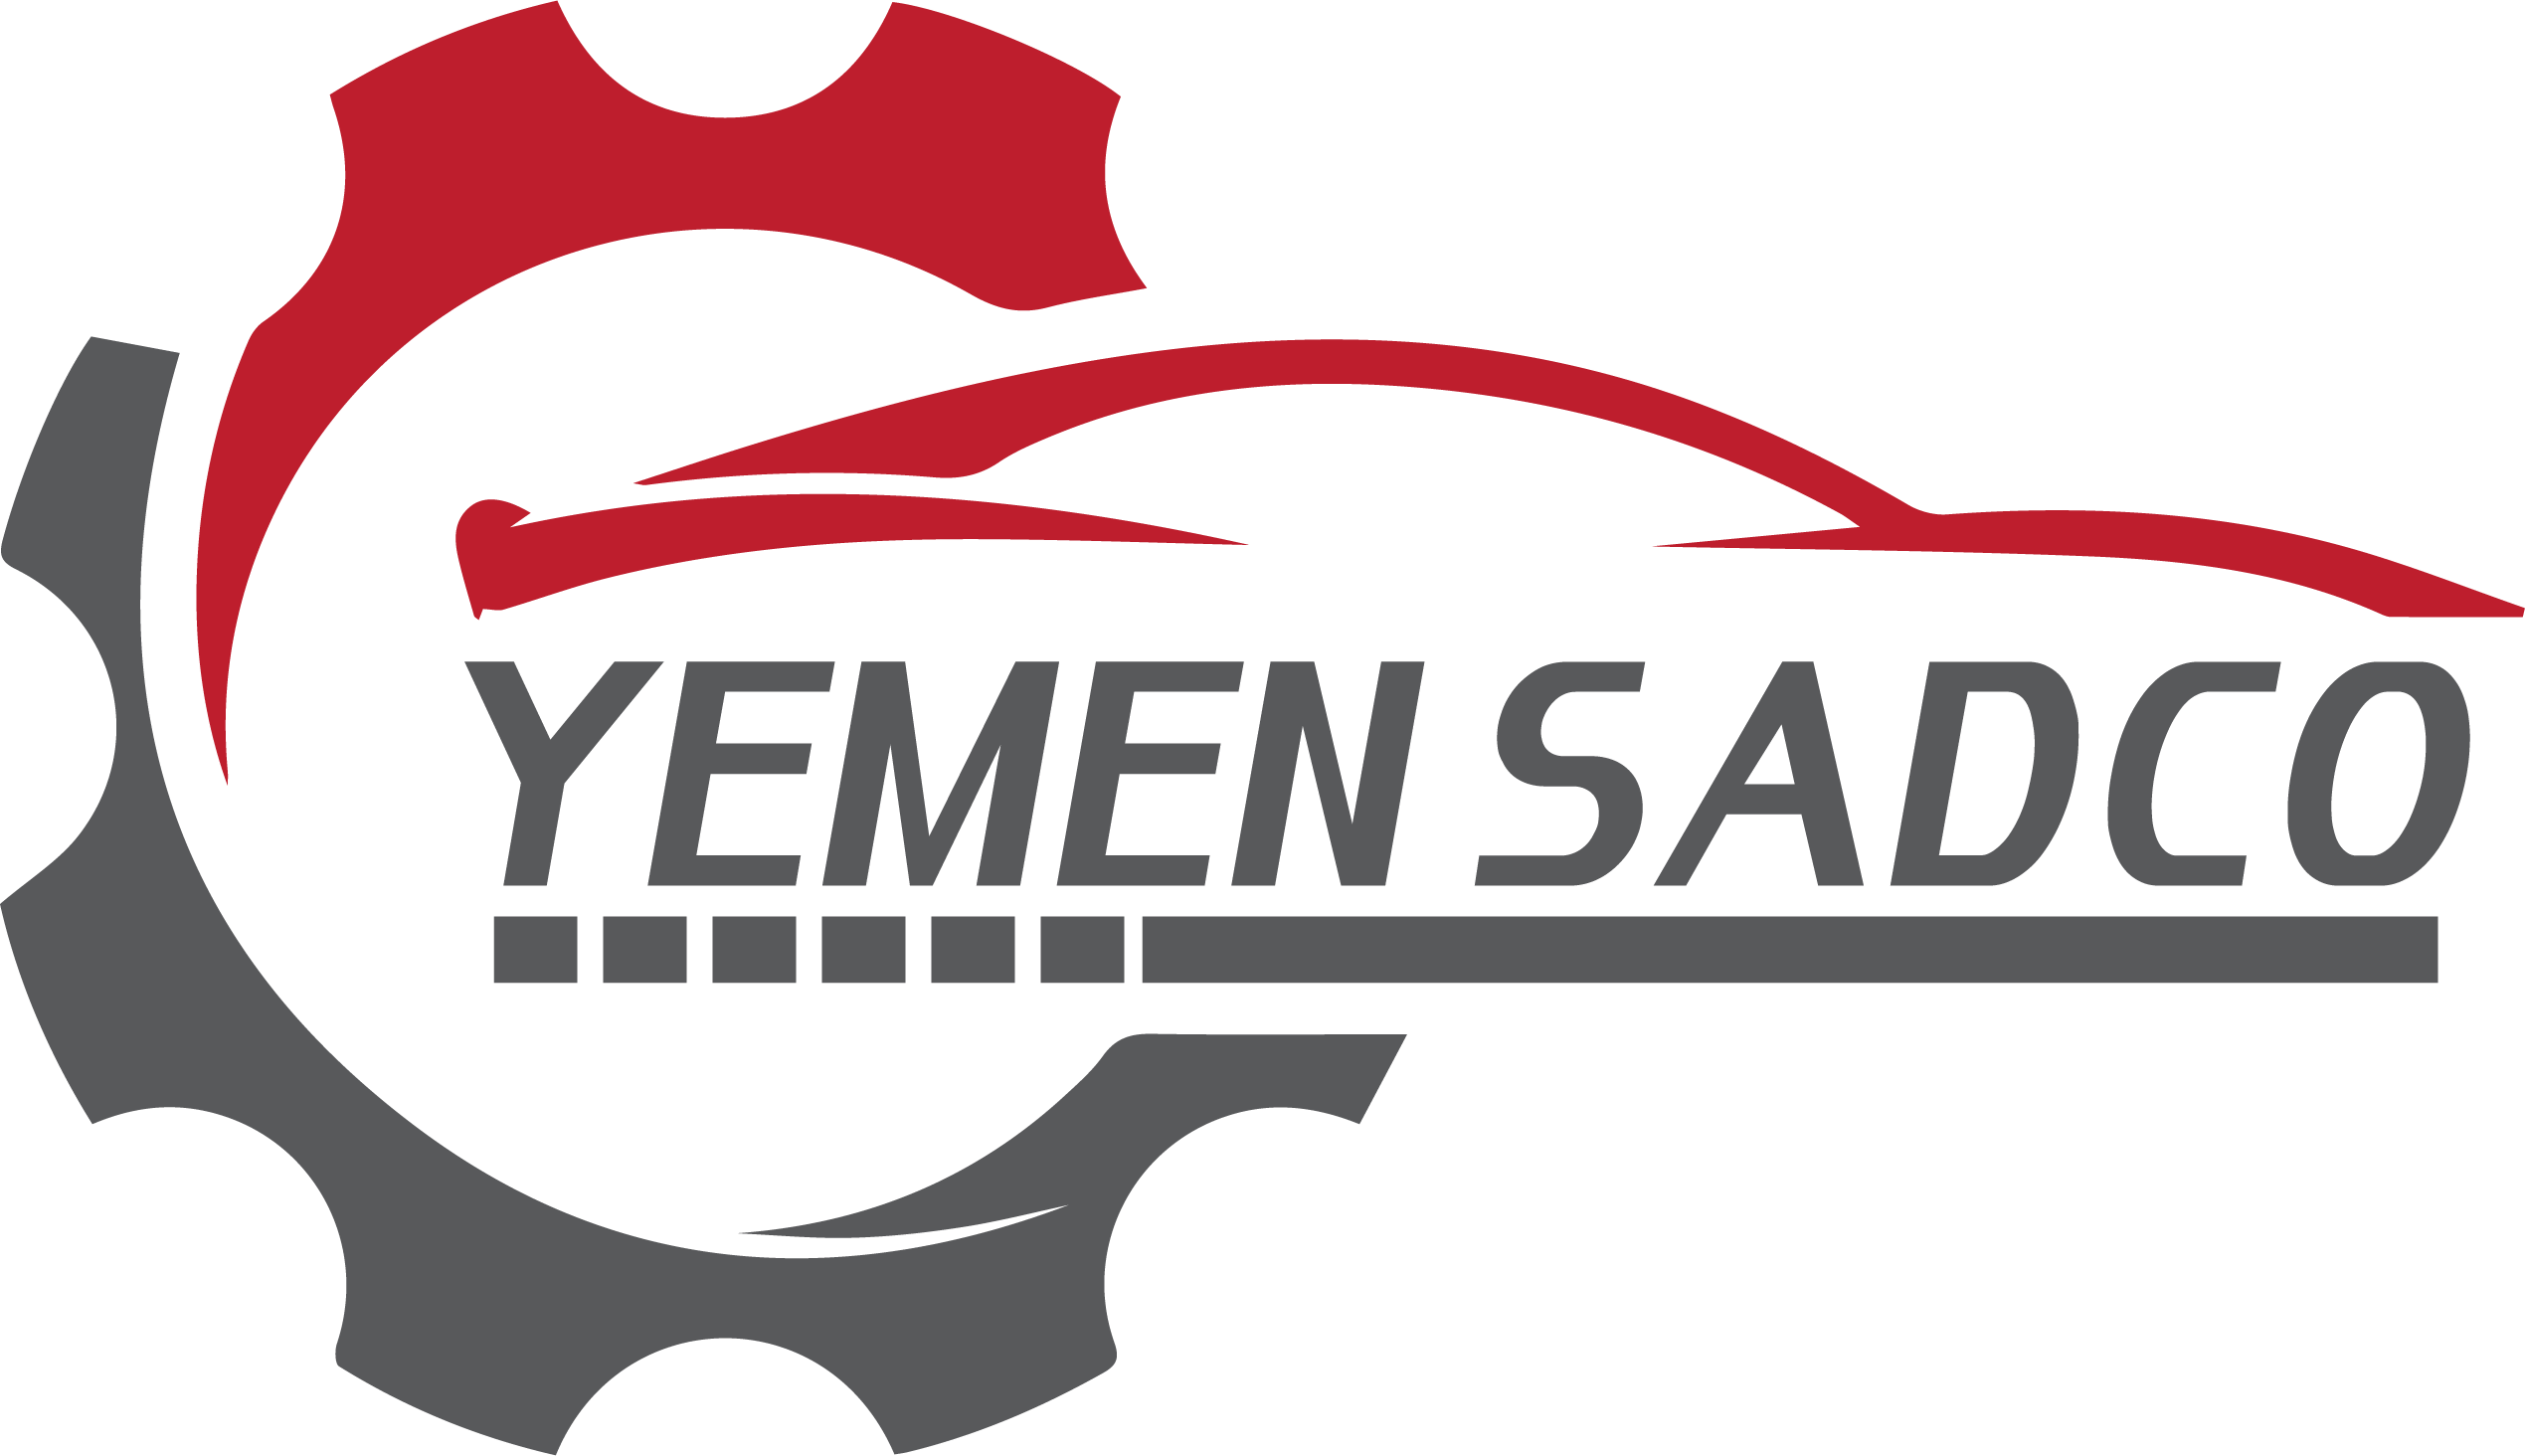 Yemen Dot Net